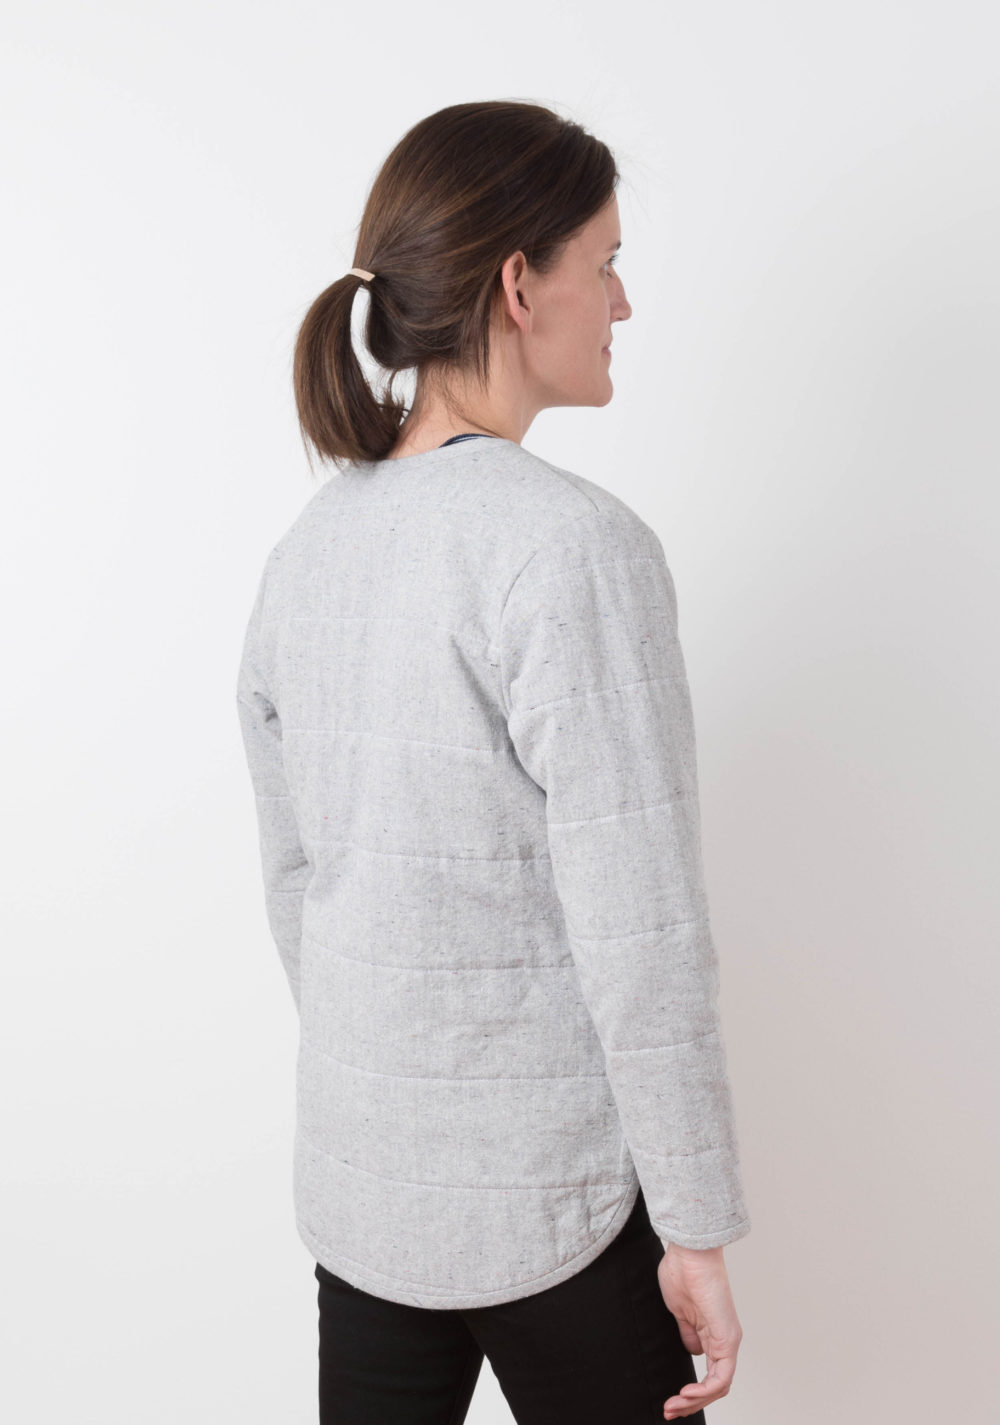 Tamarack Jacket Pattern Size 0-18 by By Grainline Studio